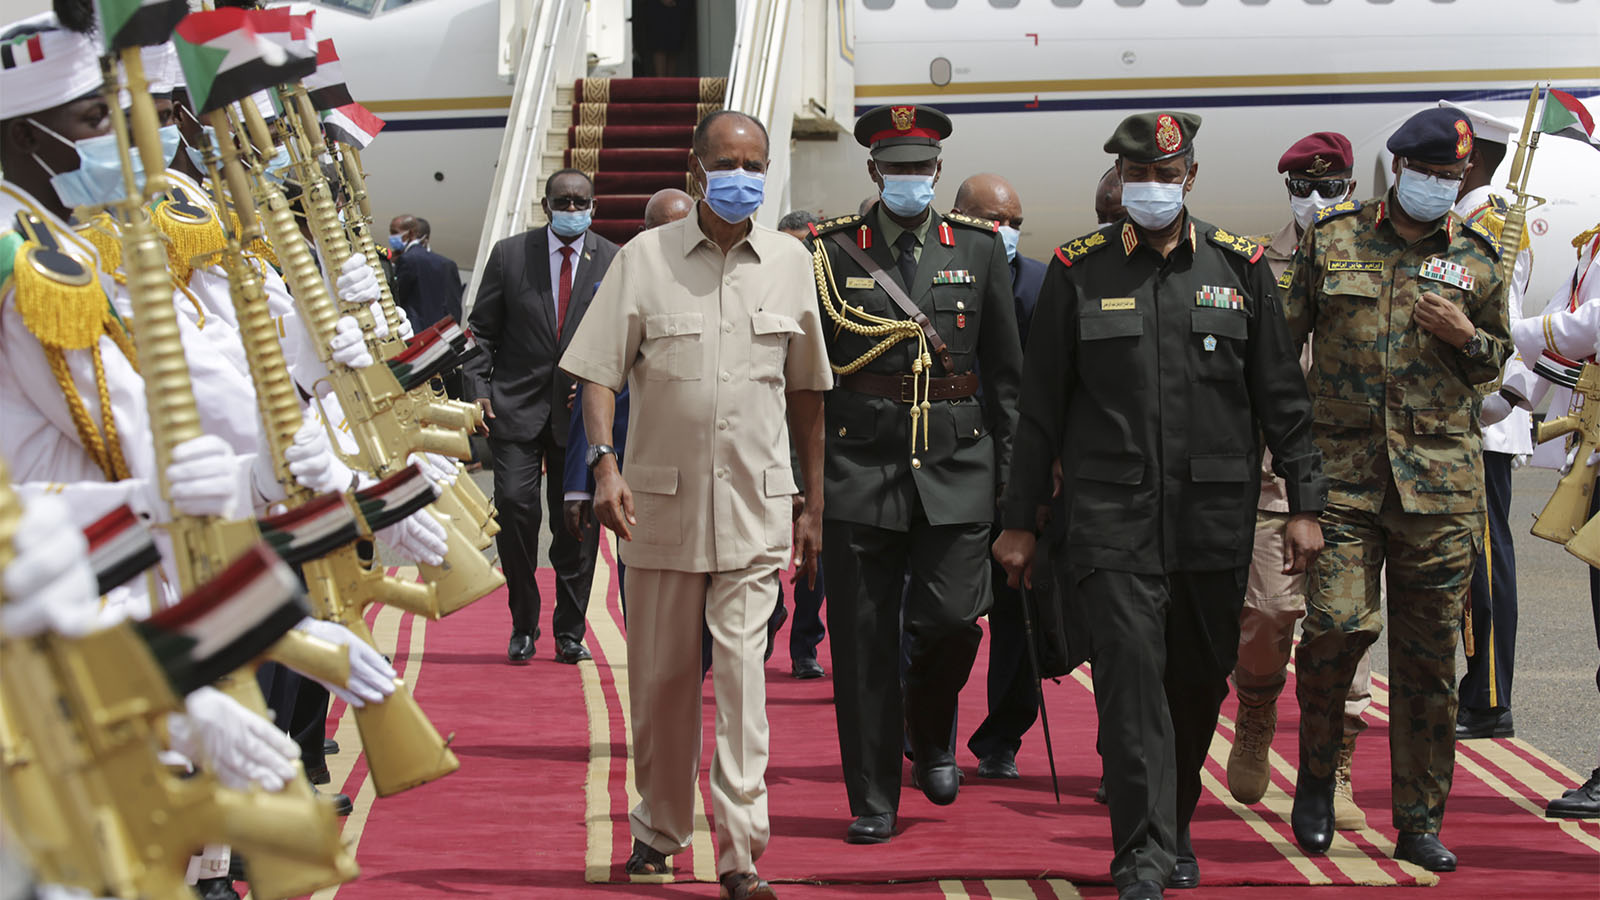 رئيس الحكومة الانتقالية في السودان، عبد الفتاح برهان (من اليمين) مع رئيس اريتريا اسايس افورقي، في المطار في عاصمة السودان. تصوير: (AP Photo / Marwan Ali)